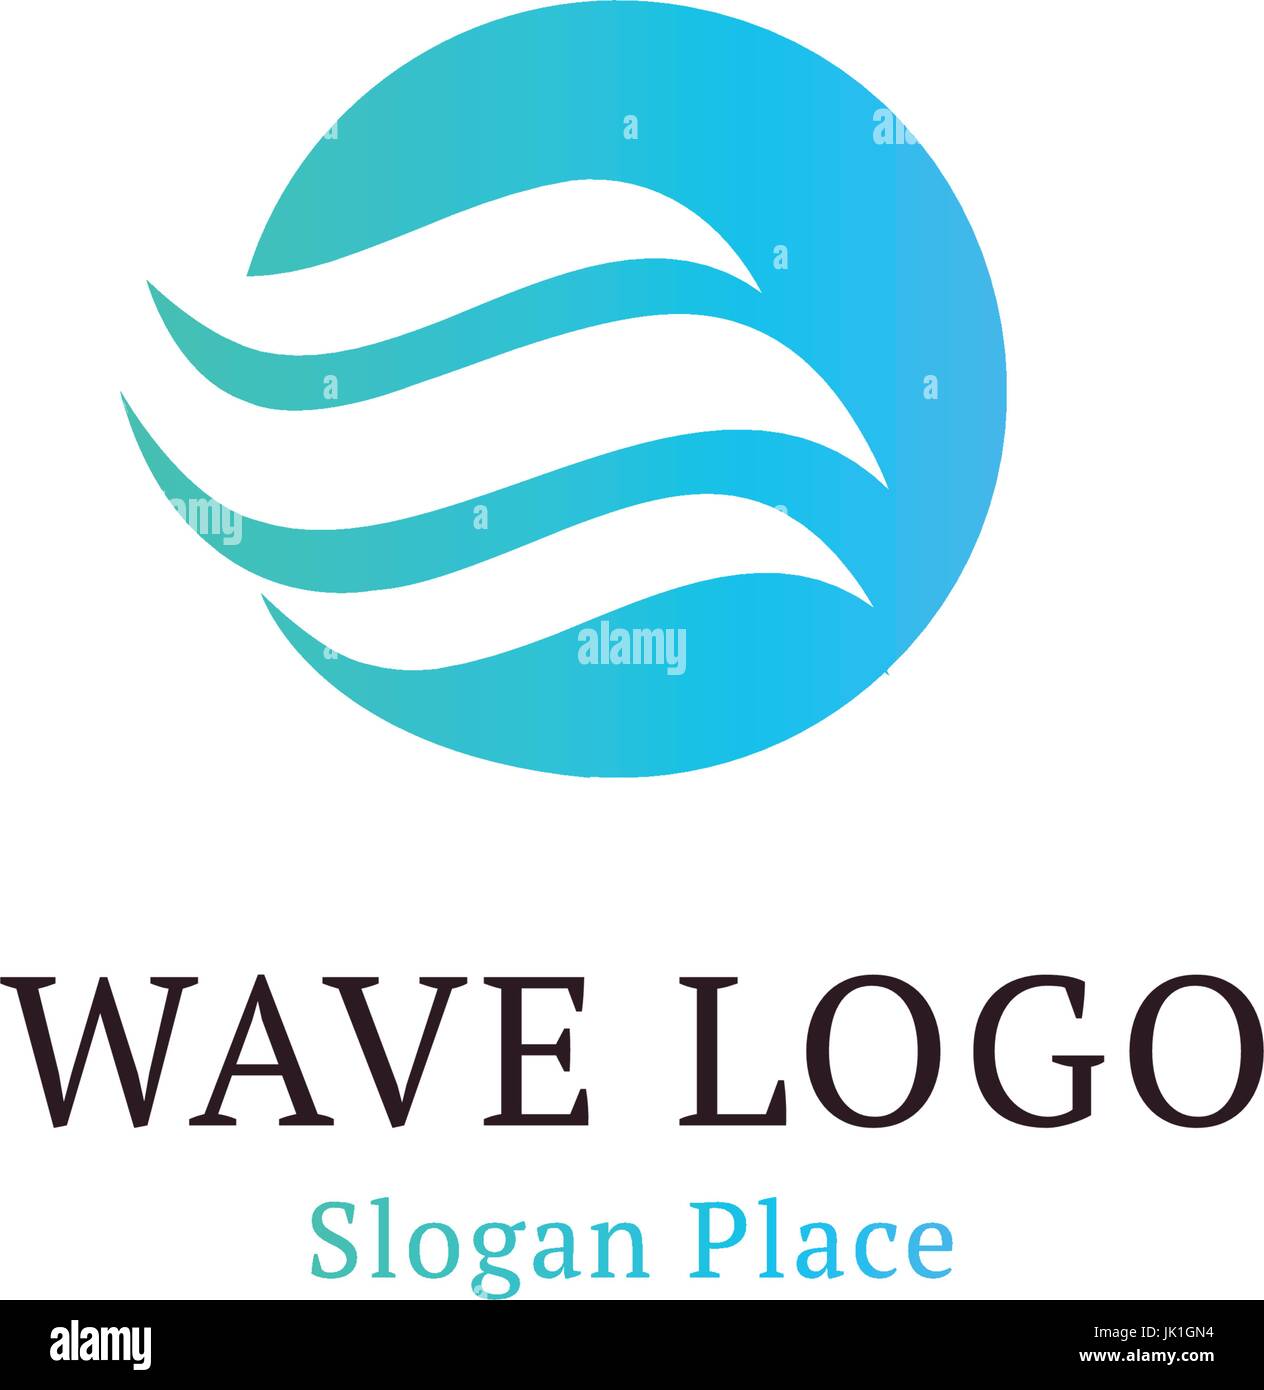 Wellig Welle in runder Form, rot und blau Feder-Logos. Isolierte abstrakt dekorative Logo setzen, Design-Element-Vorlage auf weißem Hintergrund Stock Vektor